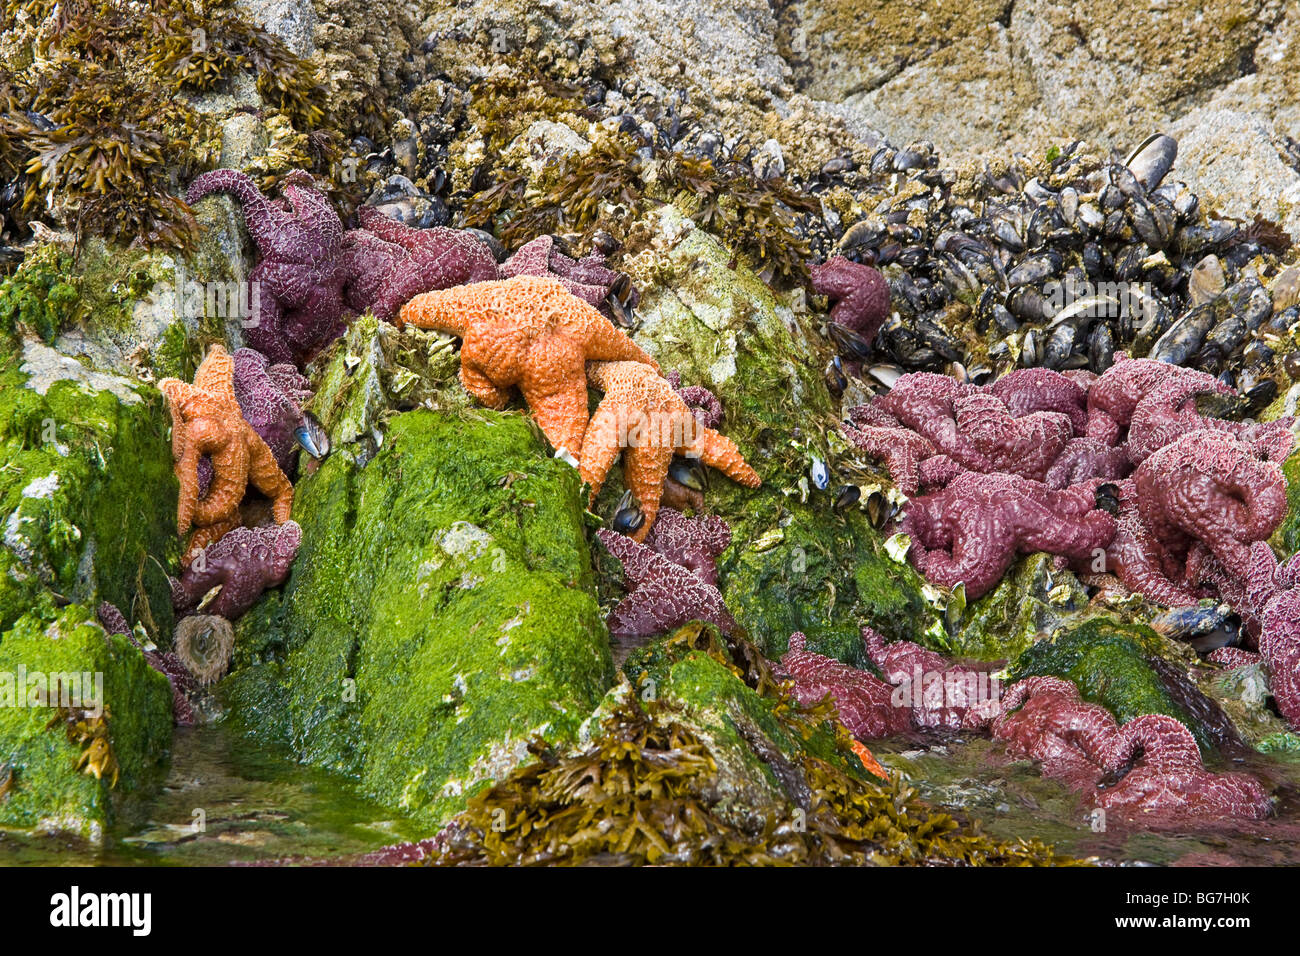 L'étoile de mer orange et violet, aussi appelée l'étoile de mer ocre, s'accrocher à des rochers avec les moules et les balanes le long du littoral à marée basse. Banque D'Images